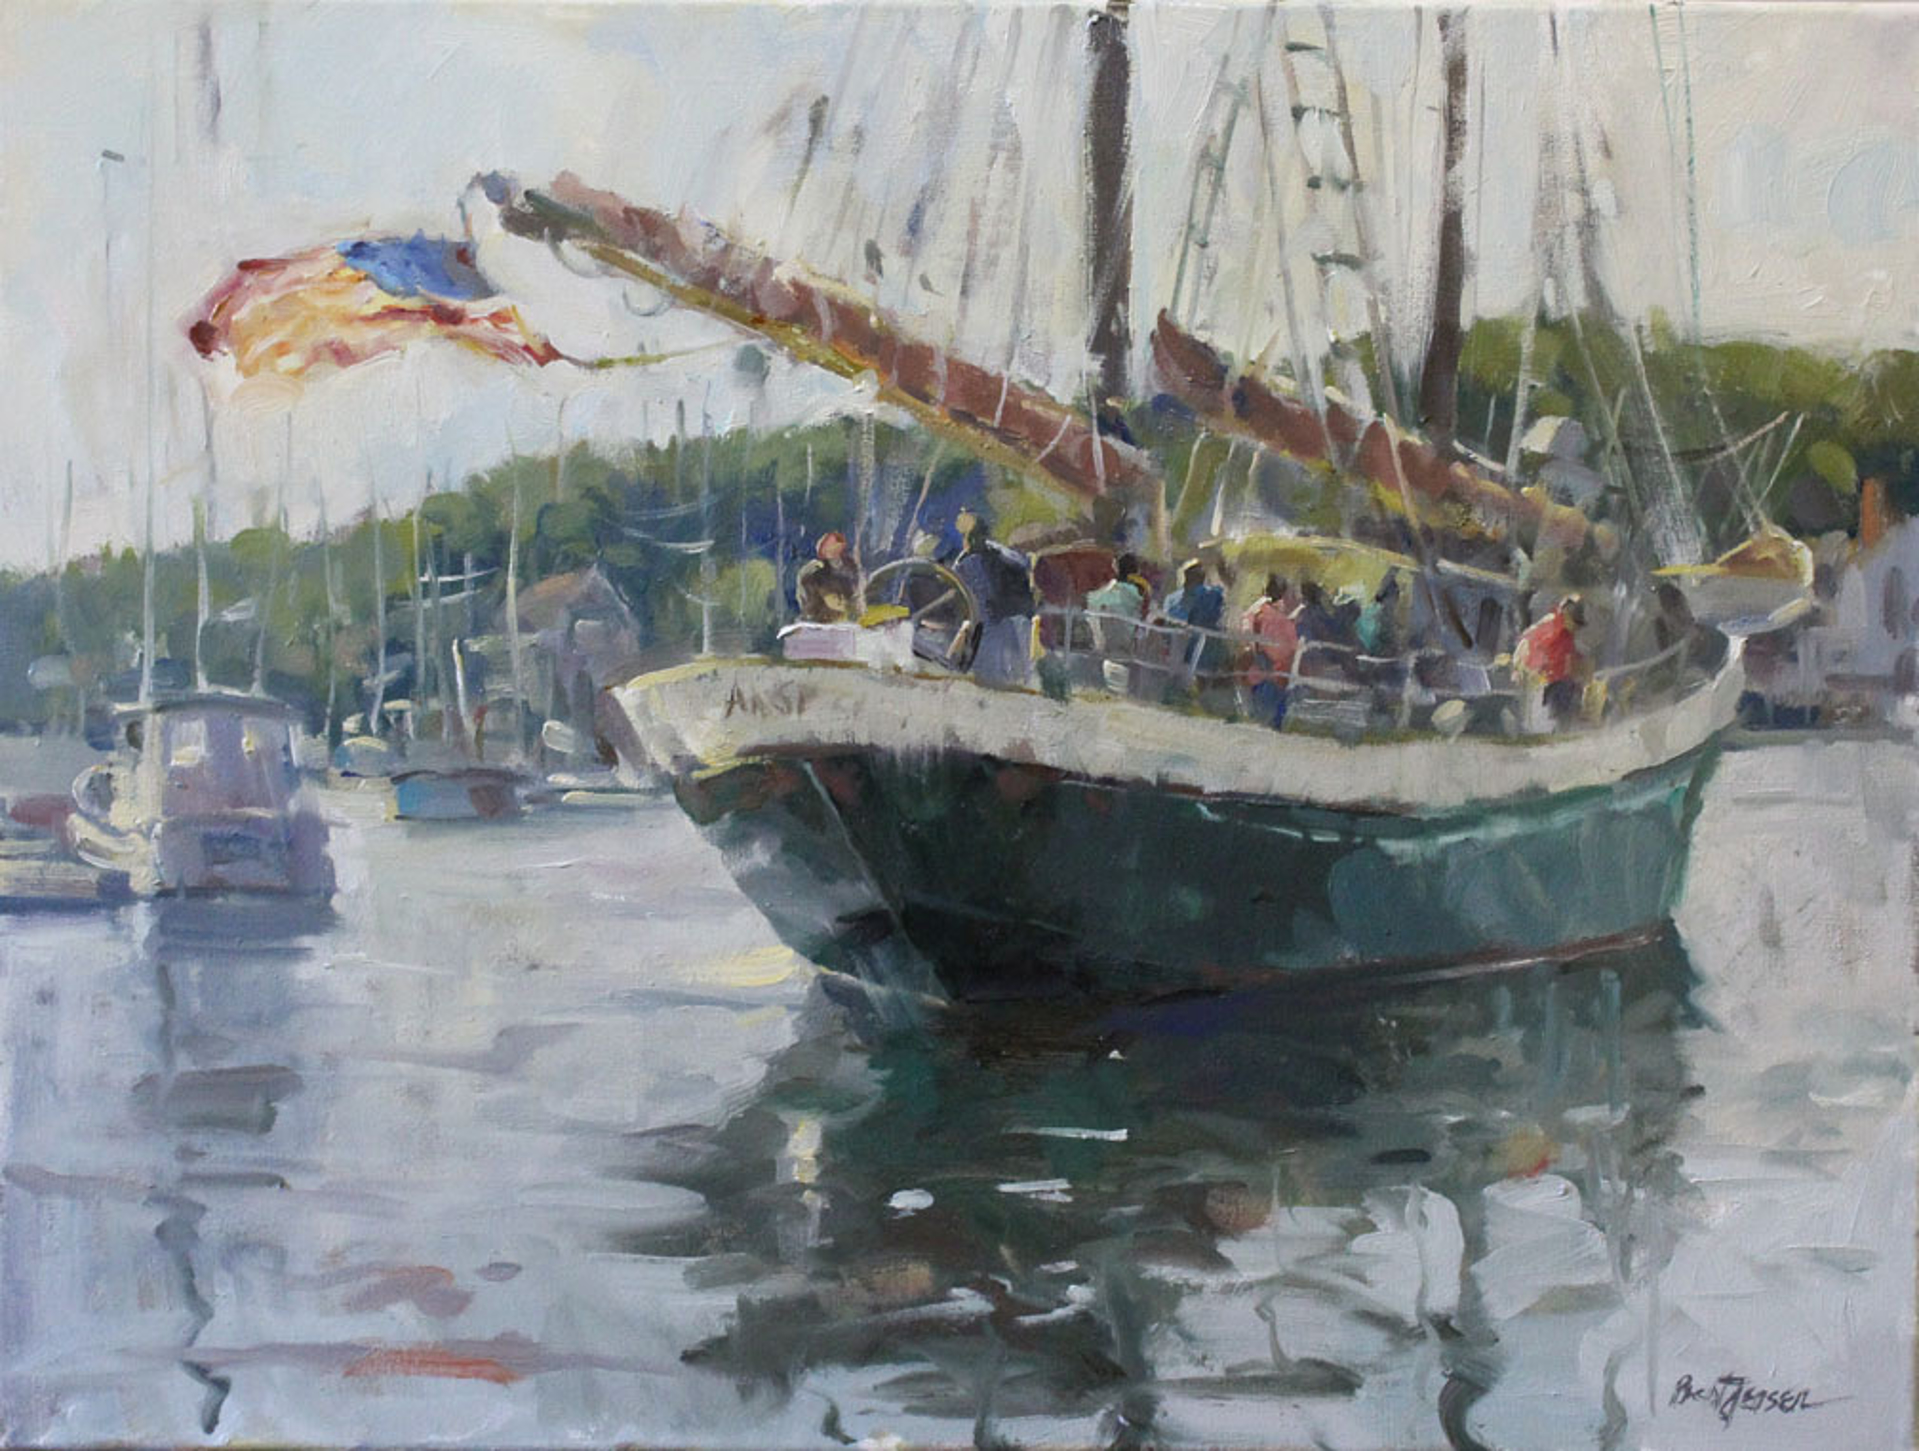 Evening Sail by Brent Jensen